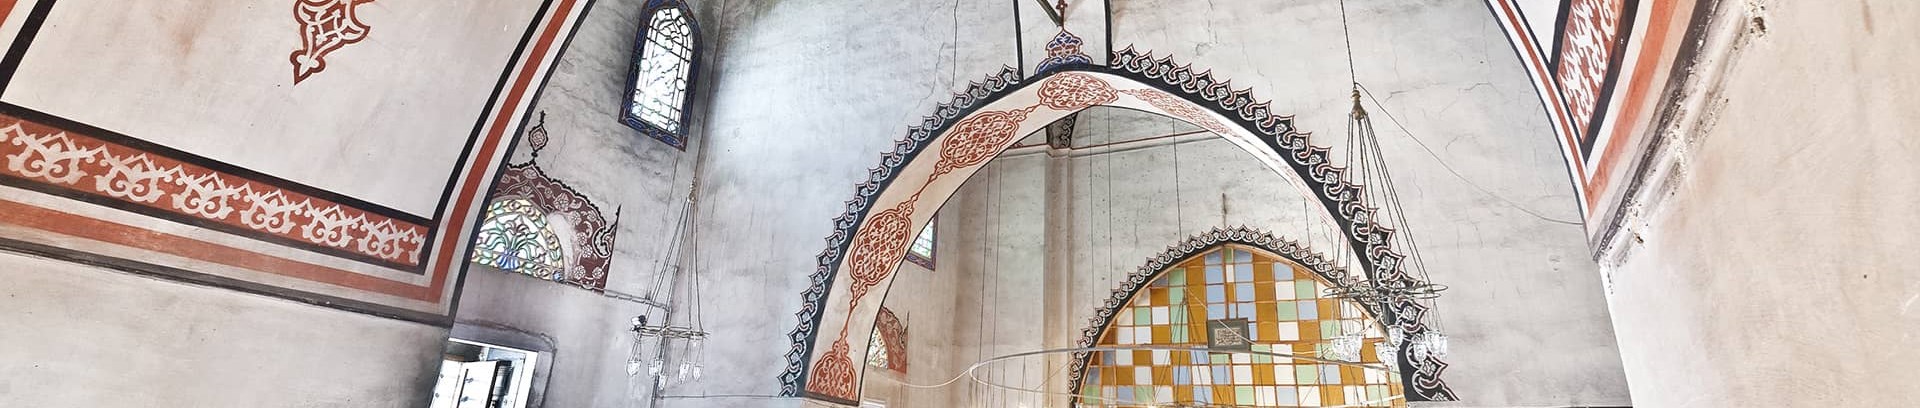 Billede indefra i tyrkisk moske